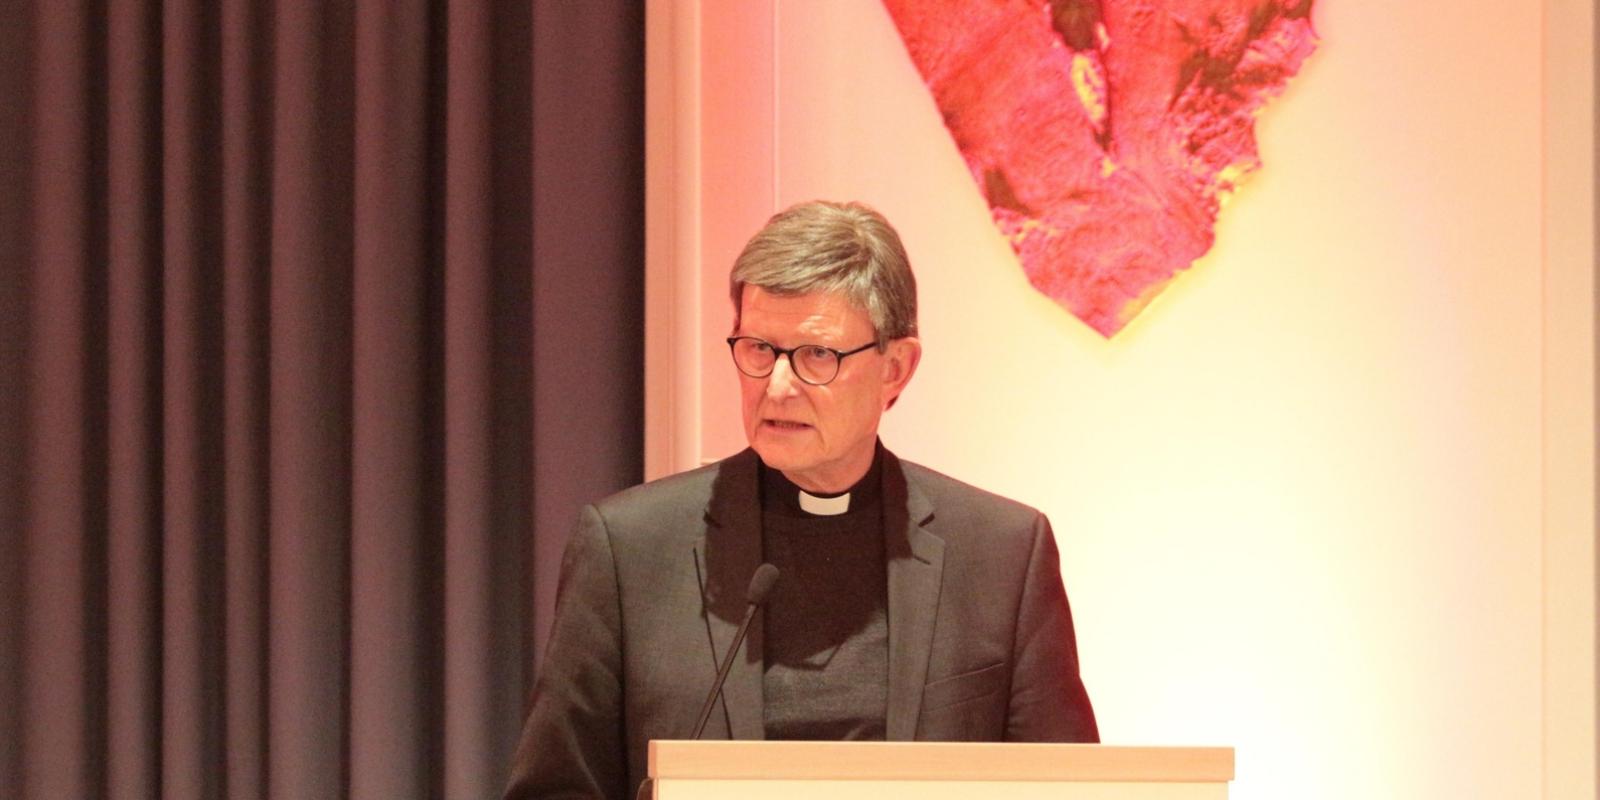 Martinsempfang des Katholischen Büros in Mainz; Vortrag von Kardinal Woelki